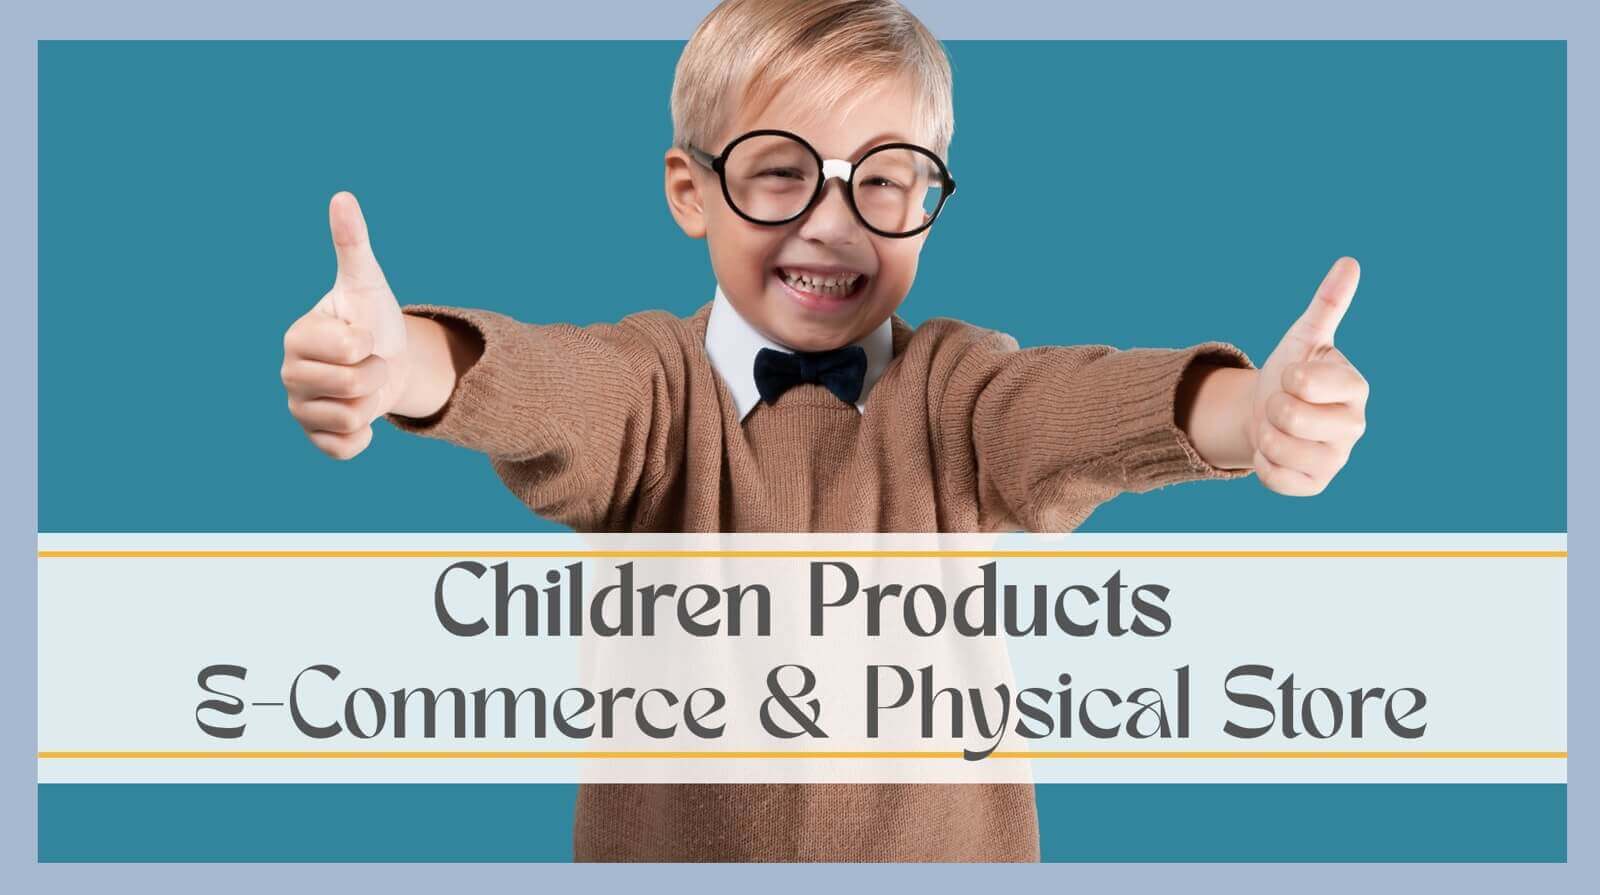 (已成交)Children Products (E-Commerce & Physical Store), Peppa Pig Official License